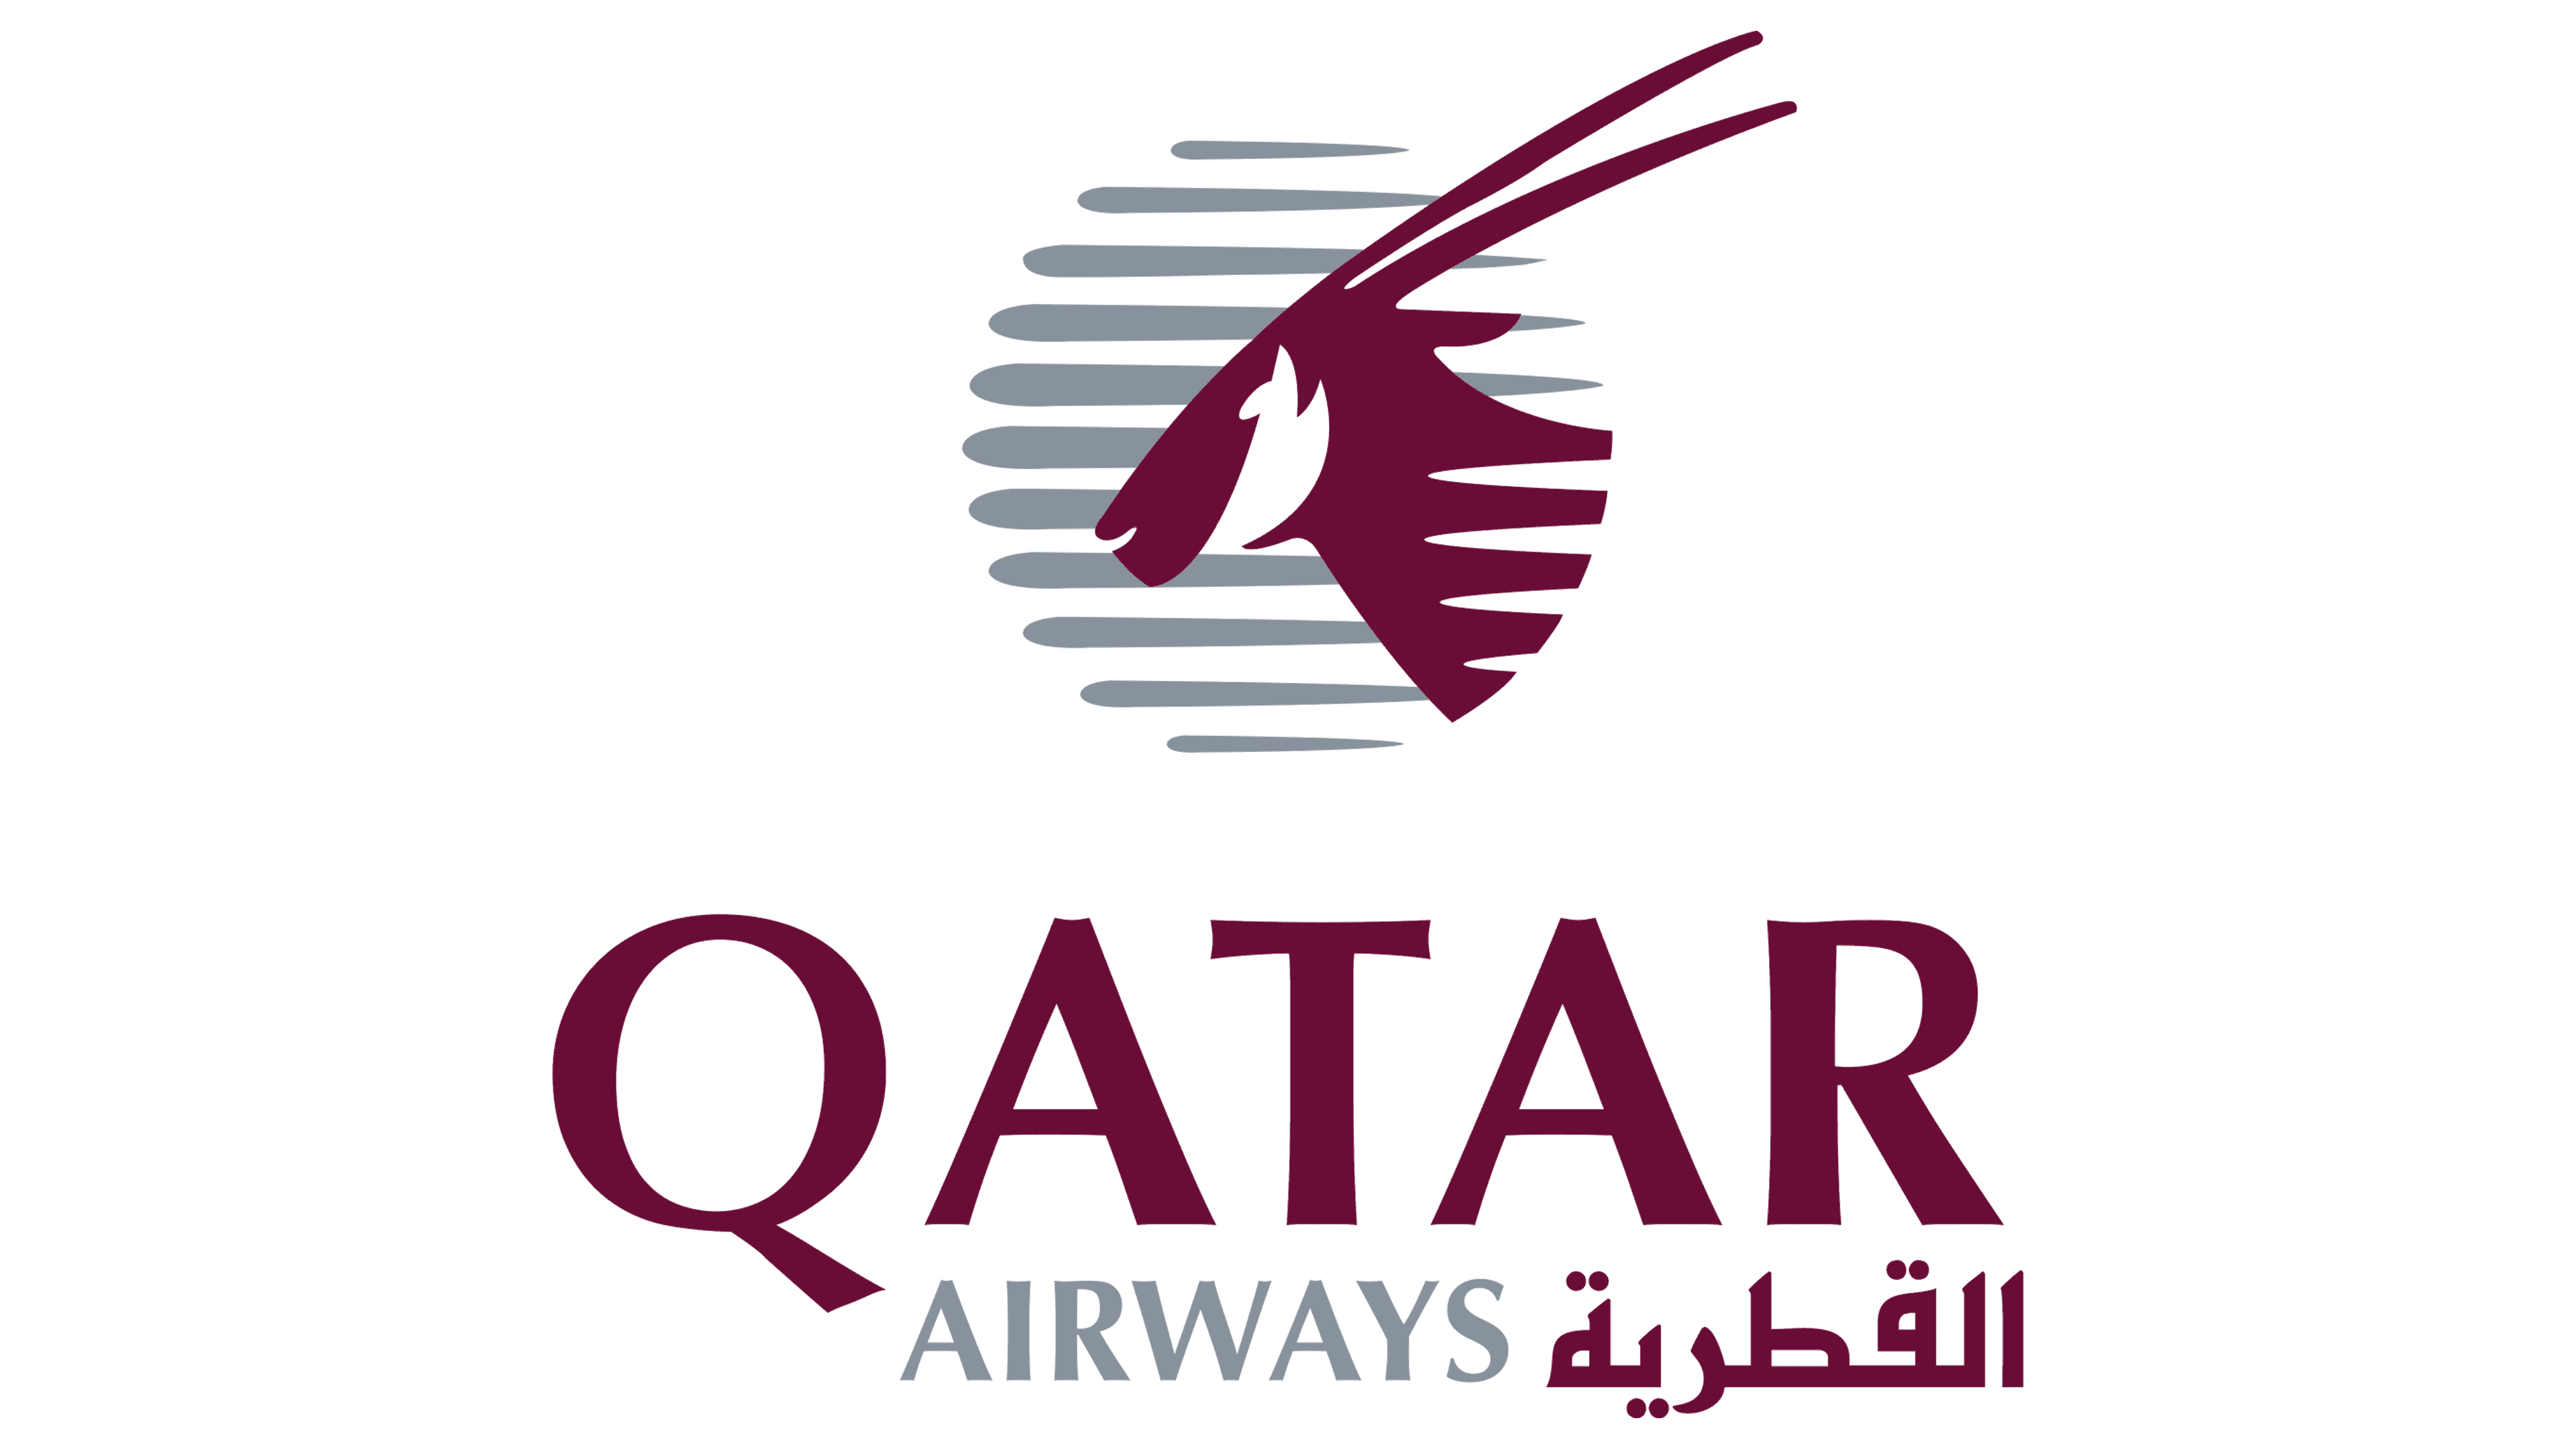 Código Qatar airways